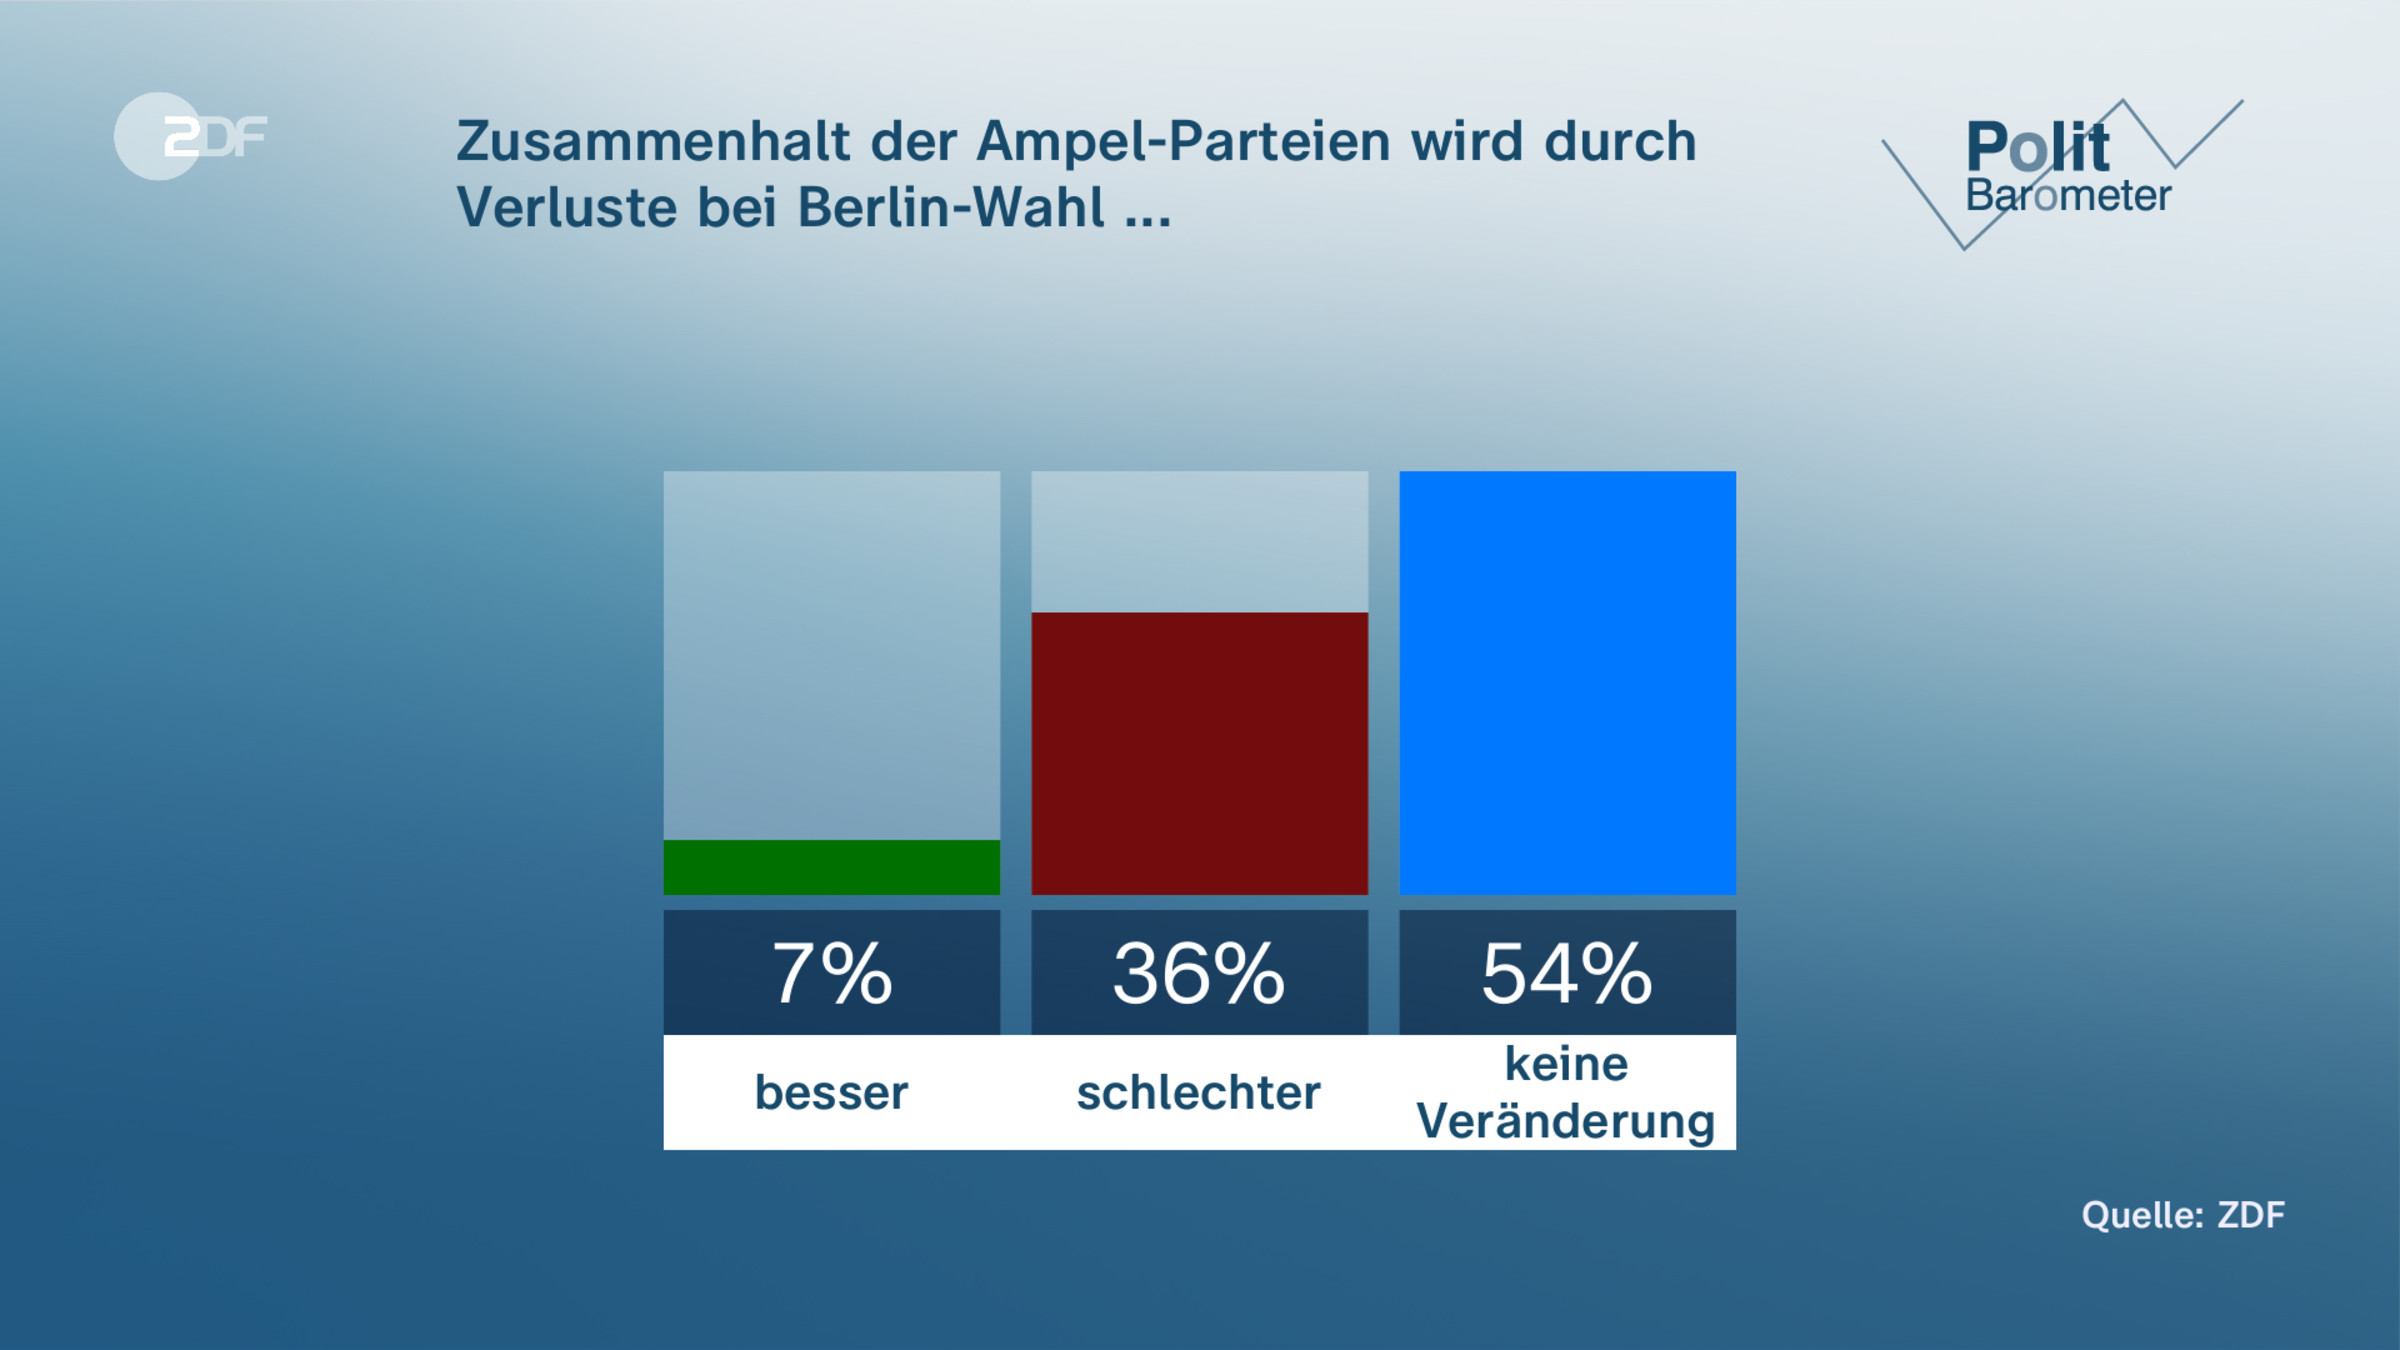 Zusammenhalt der Ampel-Parteien wird durch Verluste bei Berlin-Wahl ...